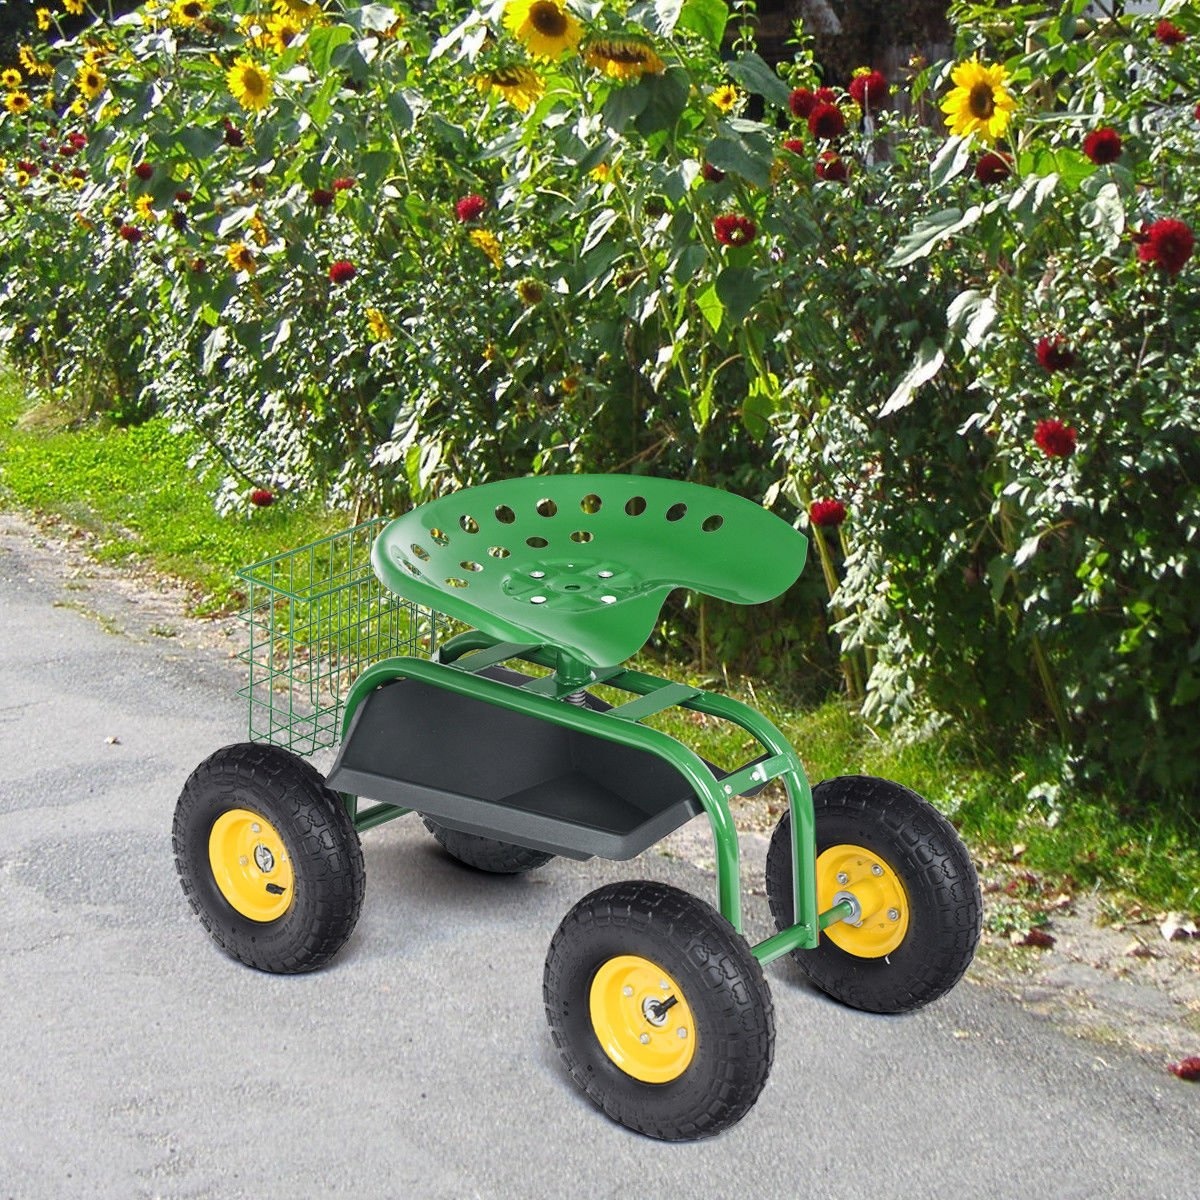 Giantex Garden Hose Reel Cart - Water Hose Cart with 4 Wheels